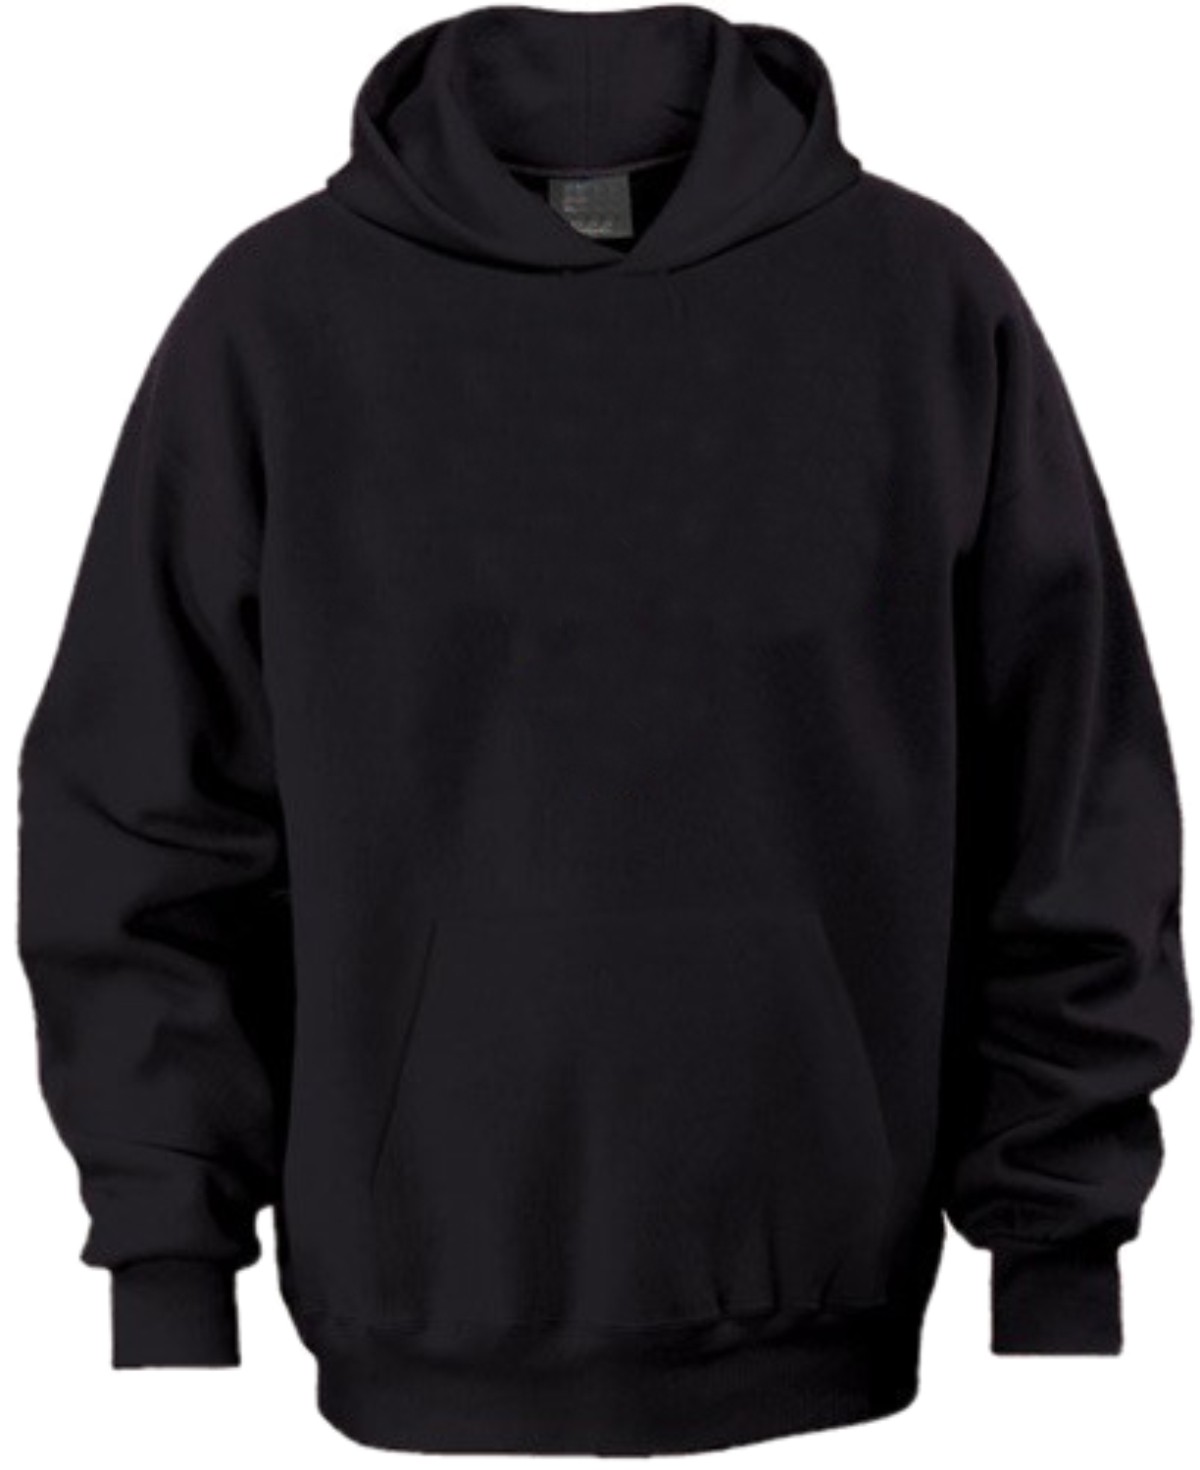 plain-black-hoodie-template